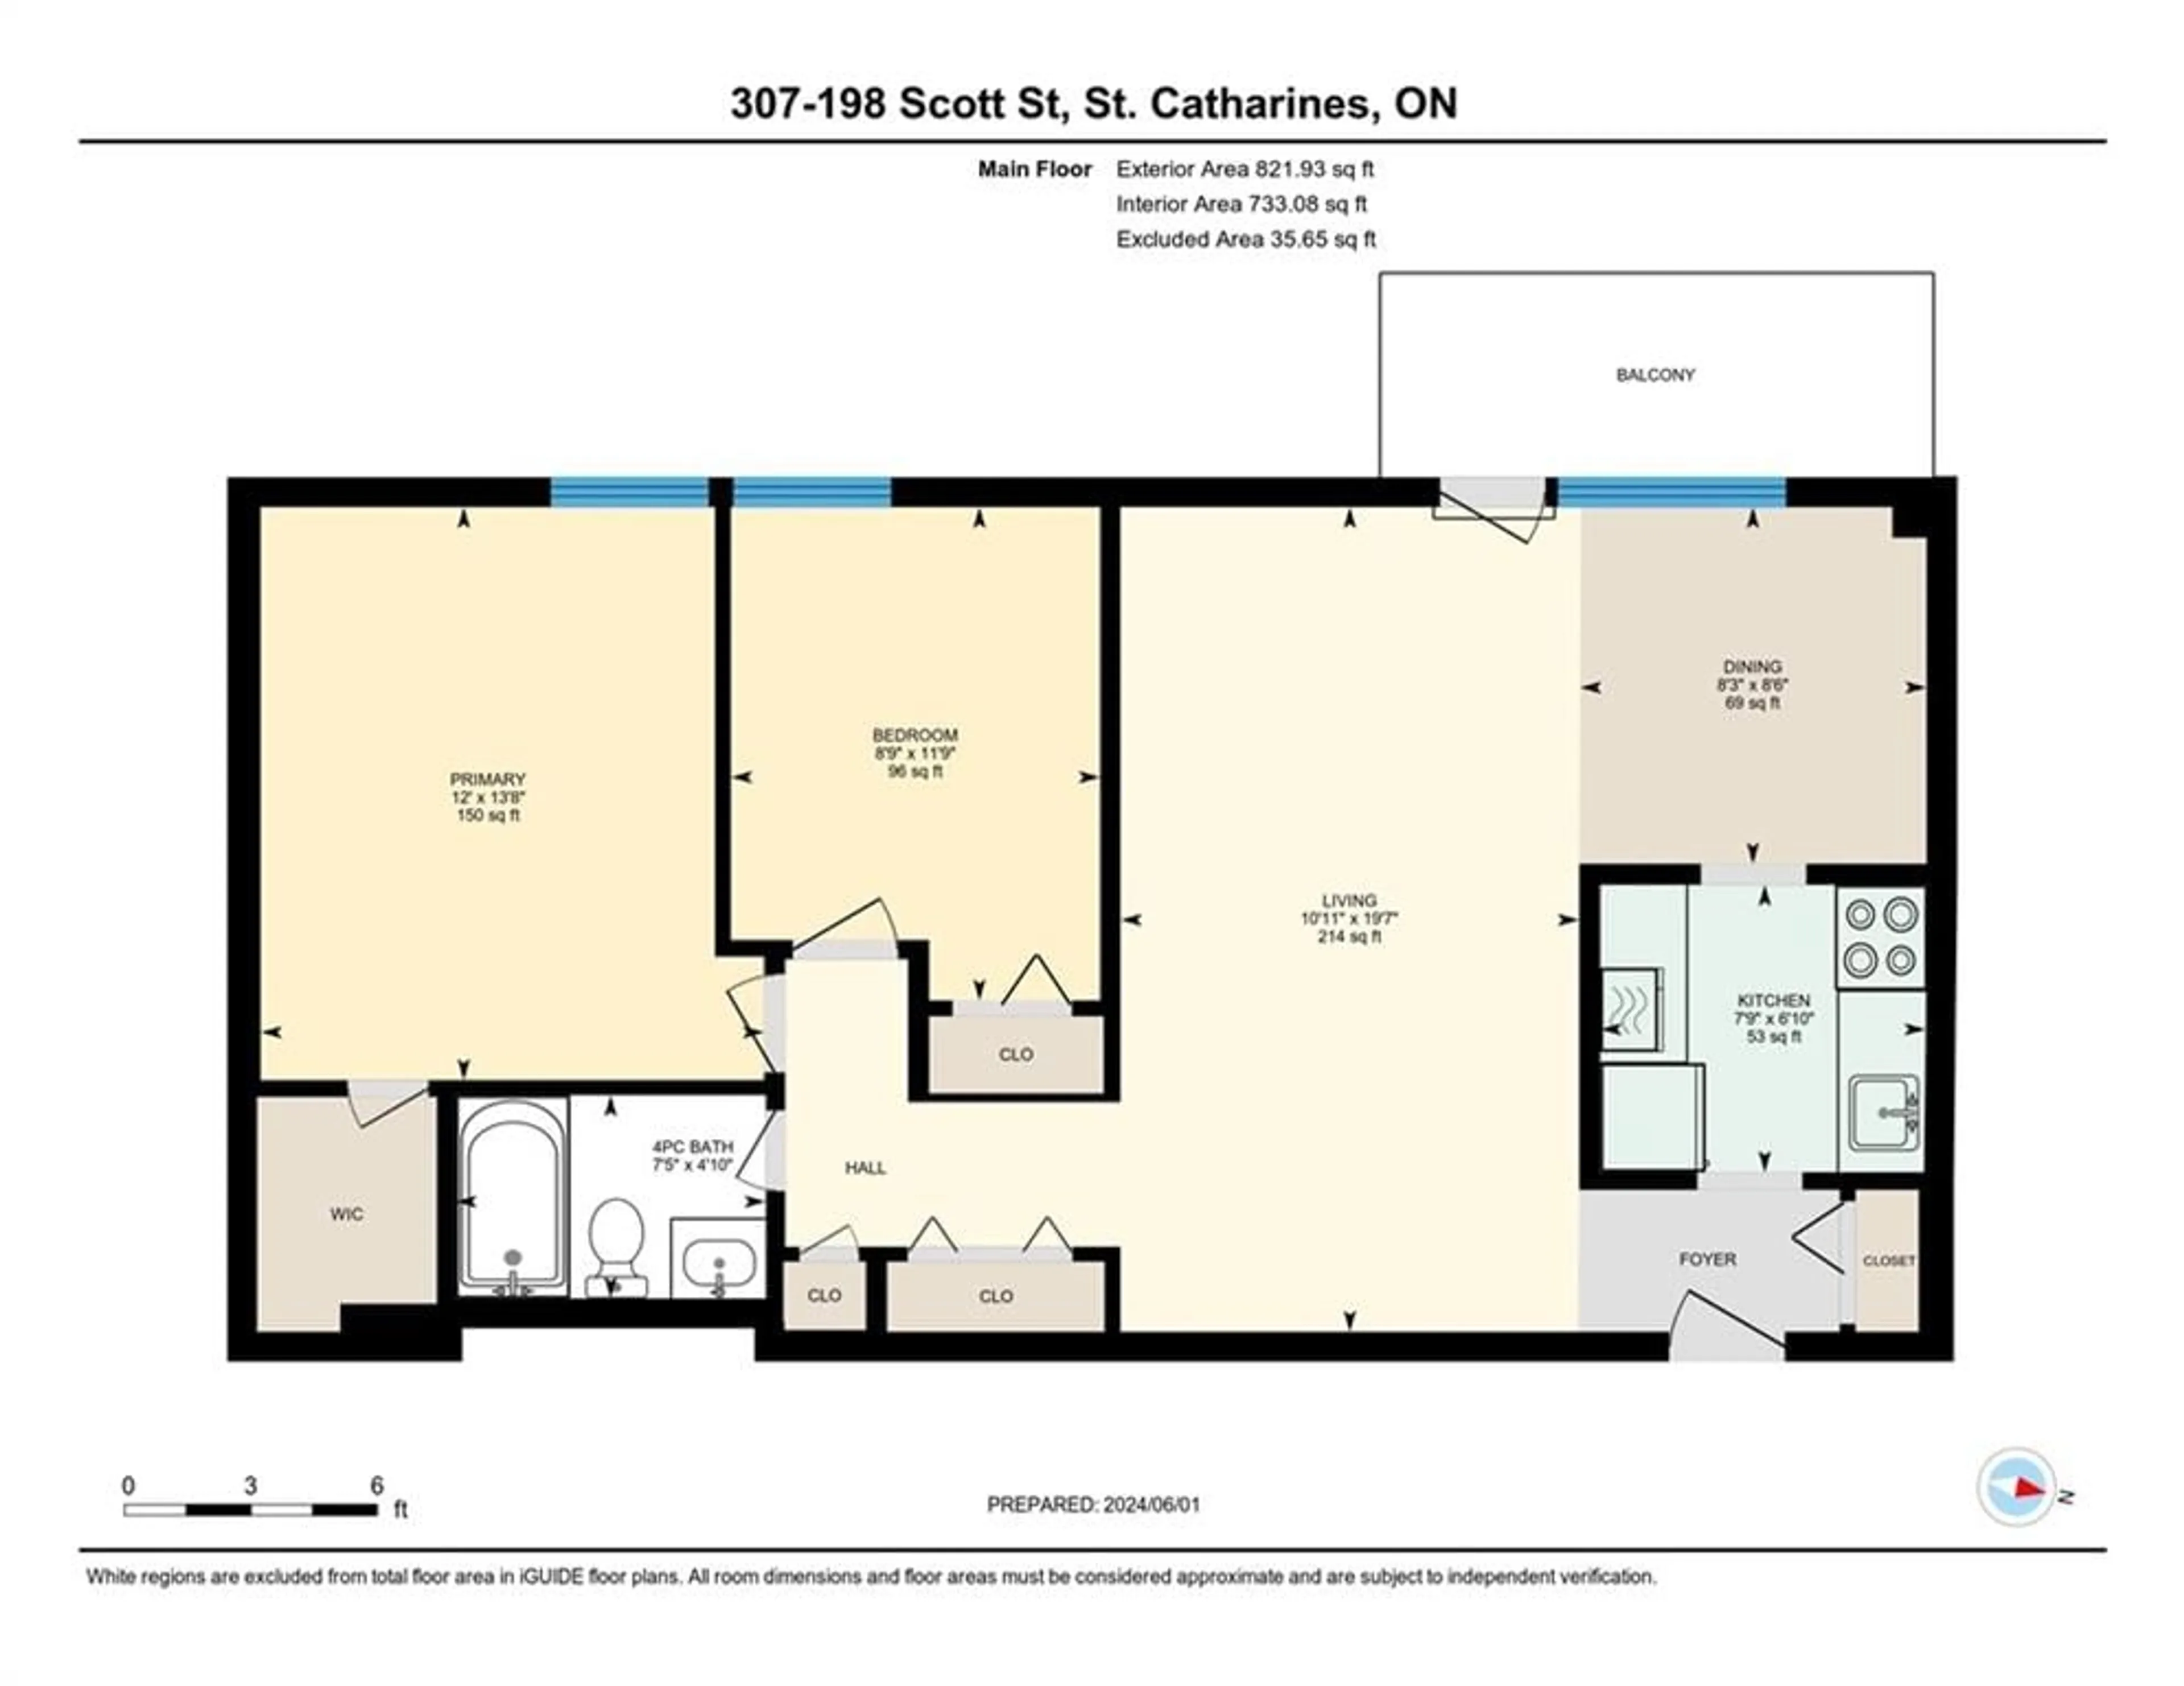 Floor plan for 198 Scott St #307, St. Catharines Ontario L2N 5T3